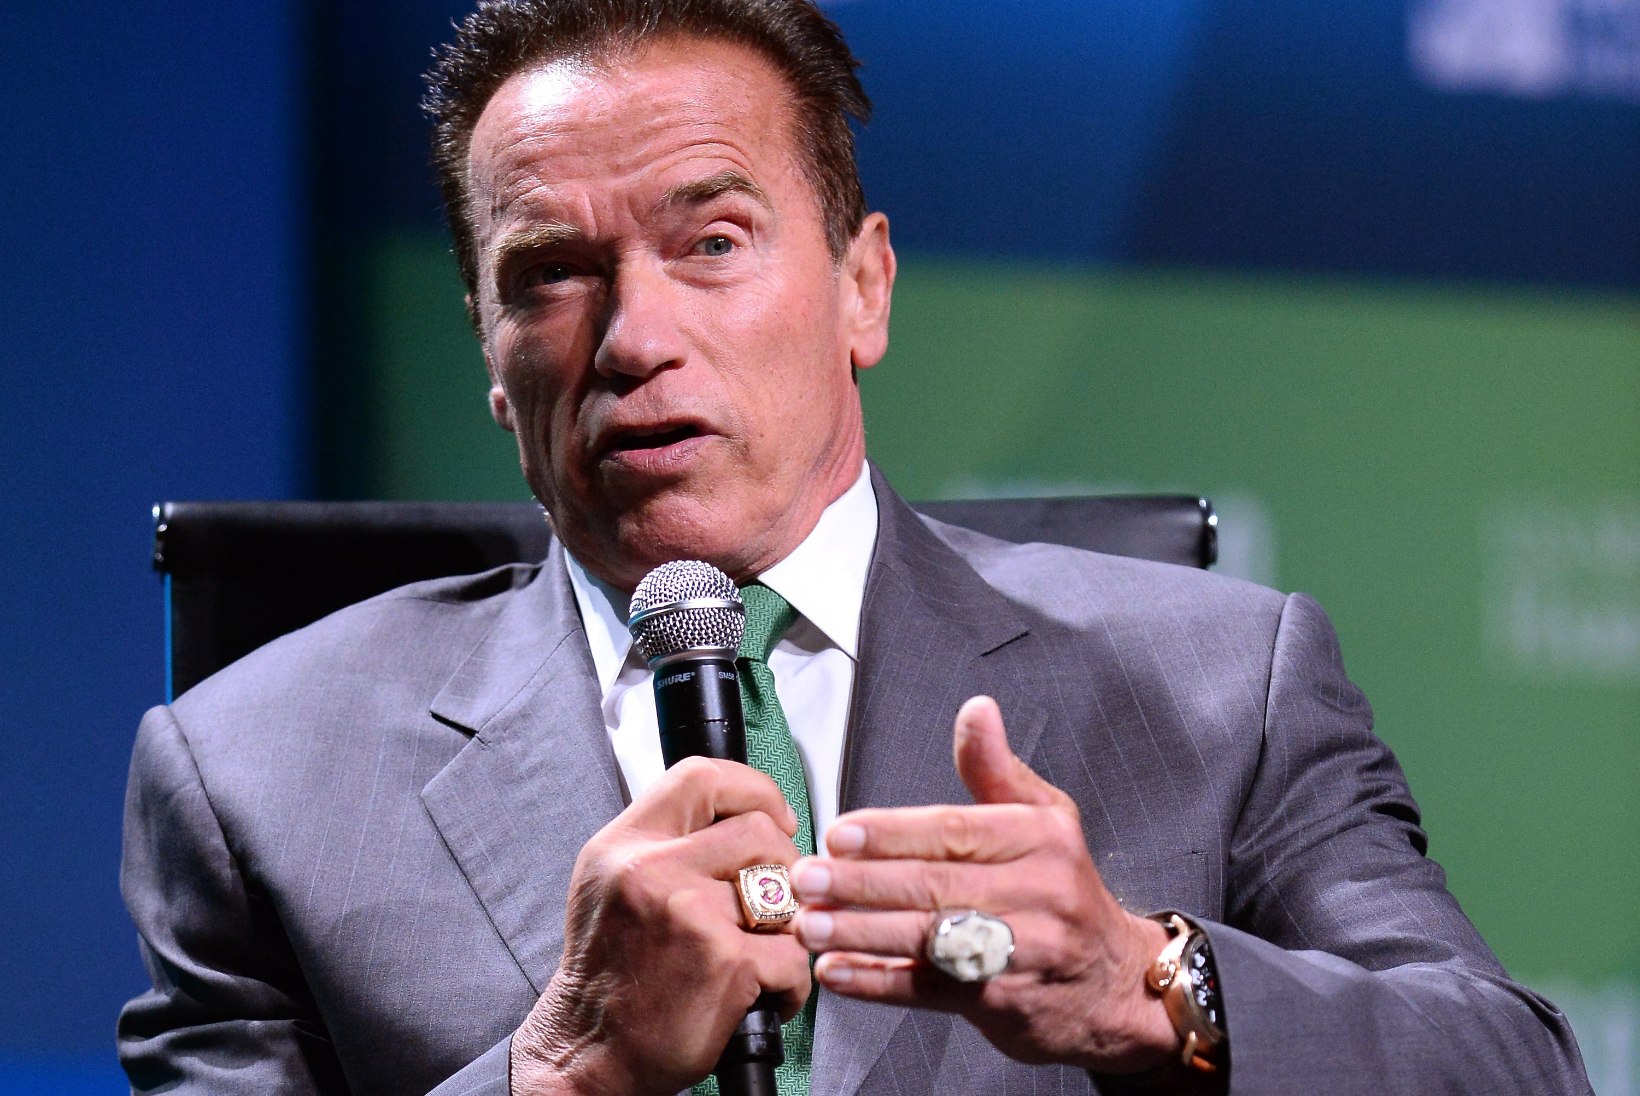 Vaata fotot! Arnold Schwarzeneggeri ja majapidajanna ühine poeg võtab juba isa mõõtu!